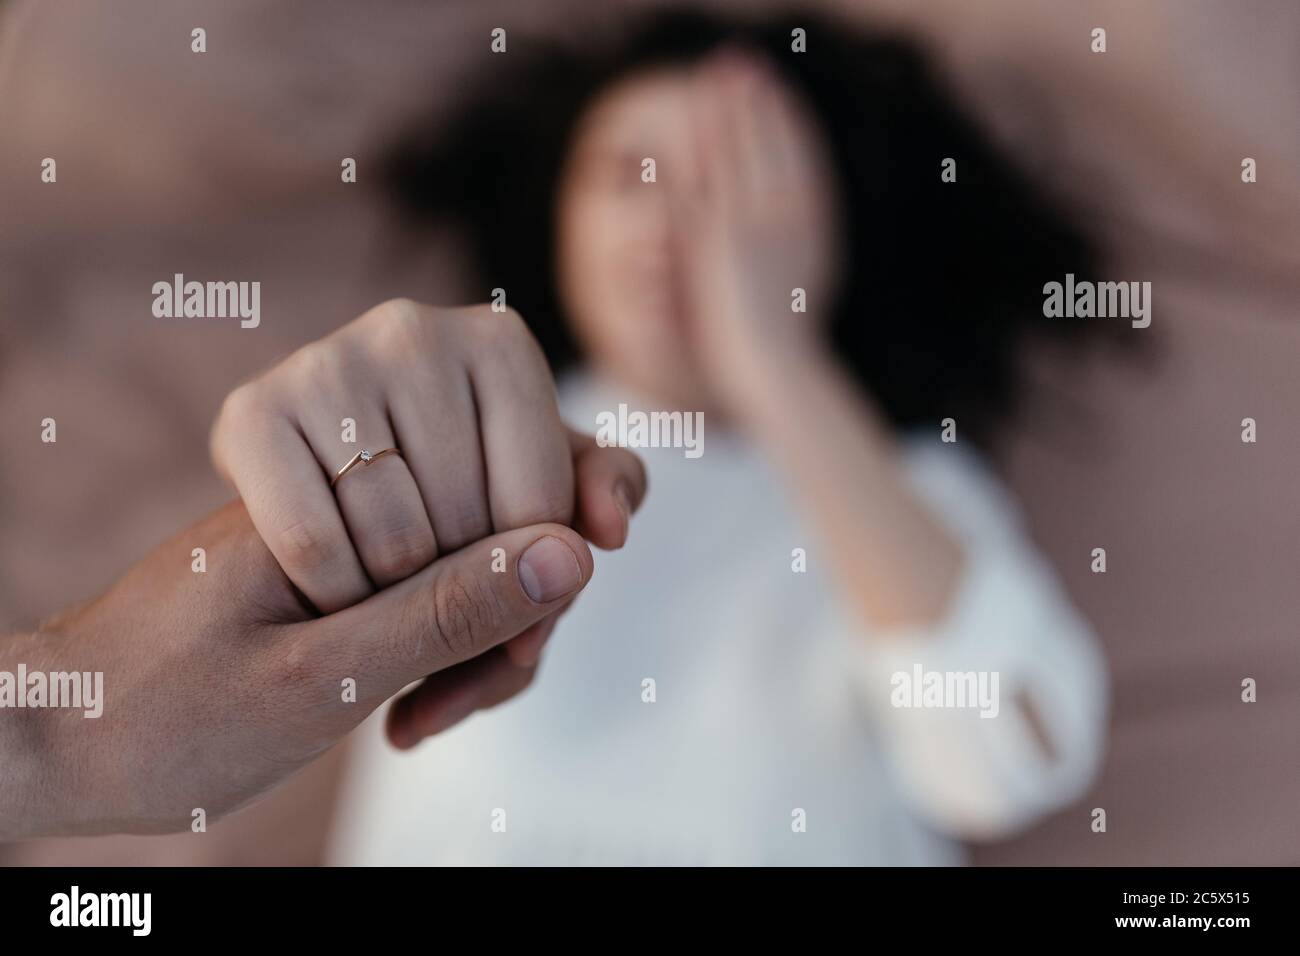 Mann hält glückliche Verlobte Hand mit Gold Verlobungsring auf ihrem Finger  nach Heiratsantrag. Verlobter zeigt Ehering Stockfotografie - Alamy